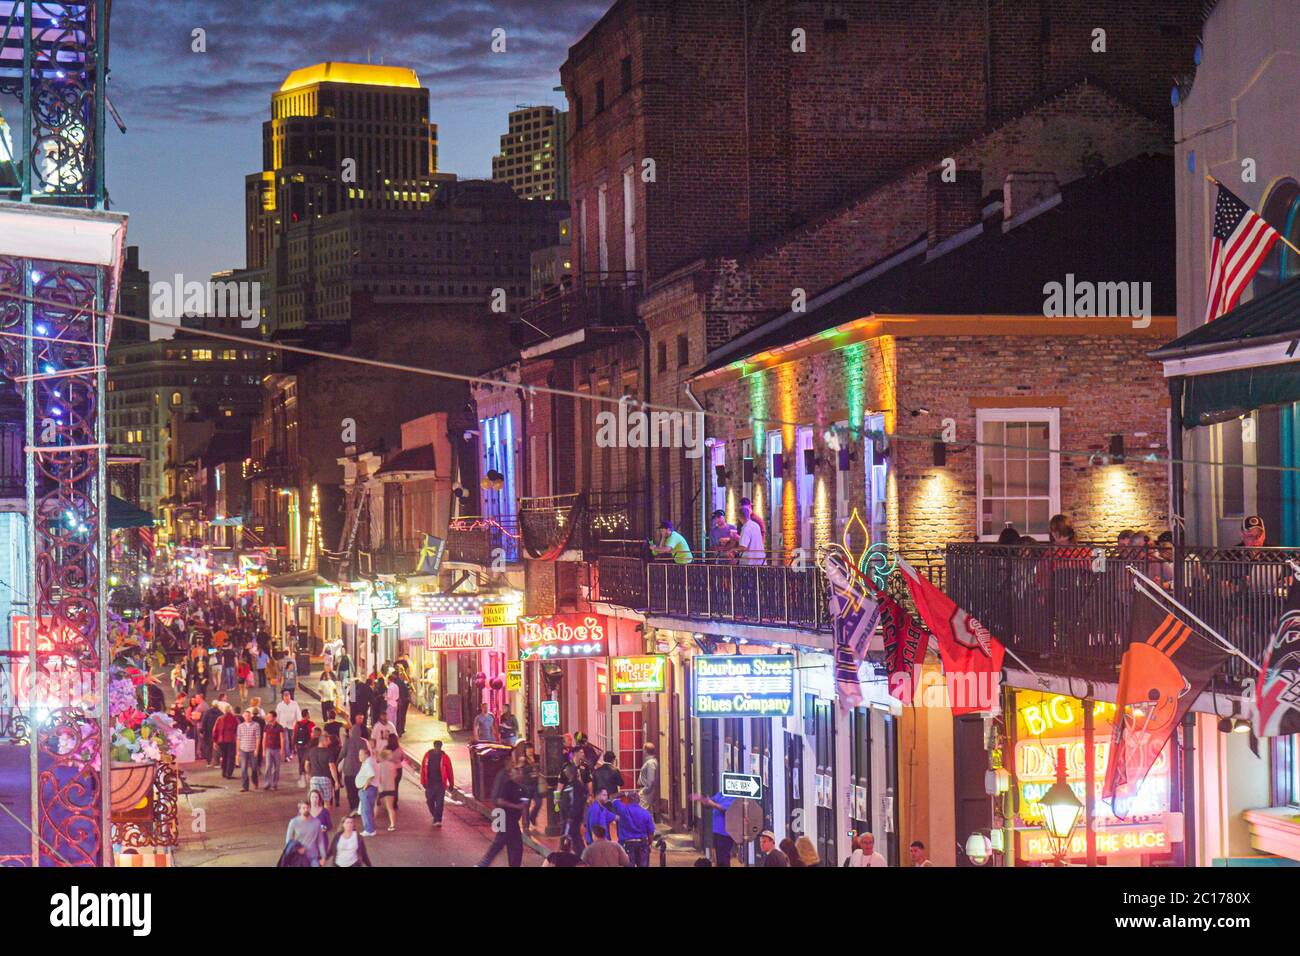 New Orleans Louisiana, französisches Viertel, Bourbon Street, Straßenszene, Skyline, Schilder, Lichter, überfüllt, Getränke trinken, Bar Lounge Pub, Jazz, Live-Musik, Straße Stockfoto